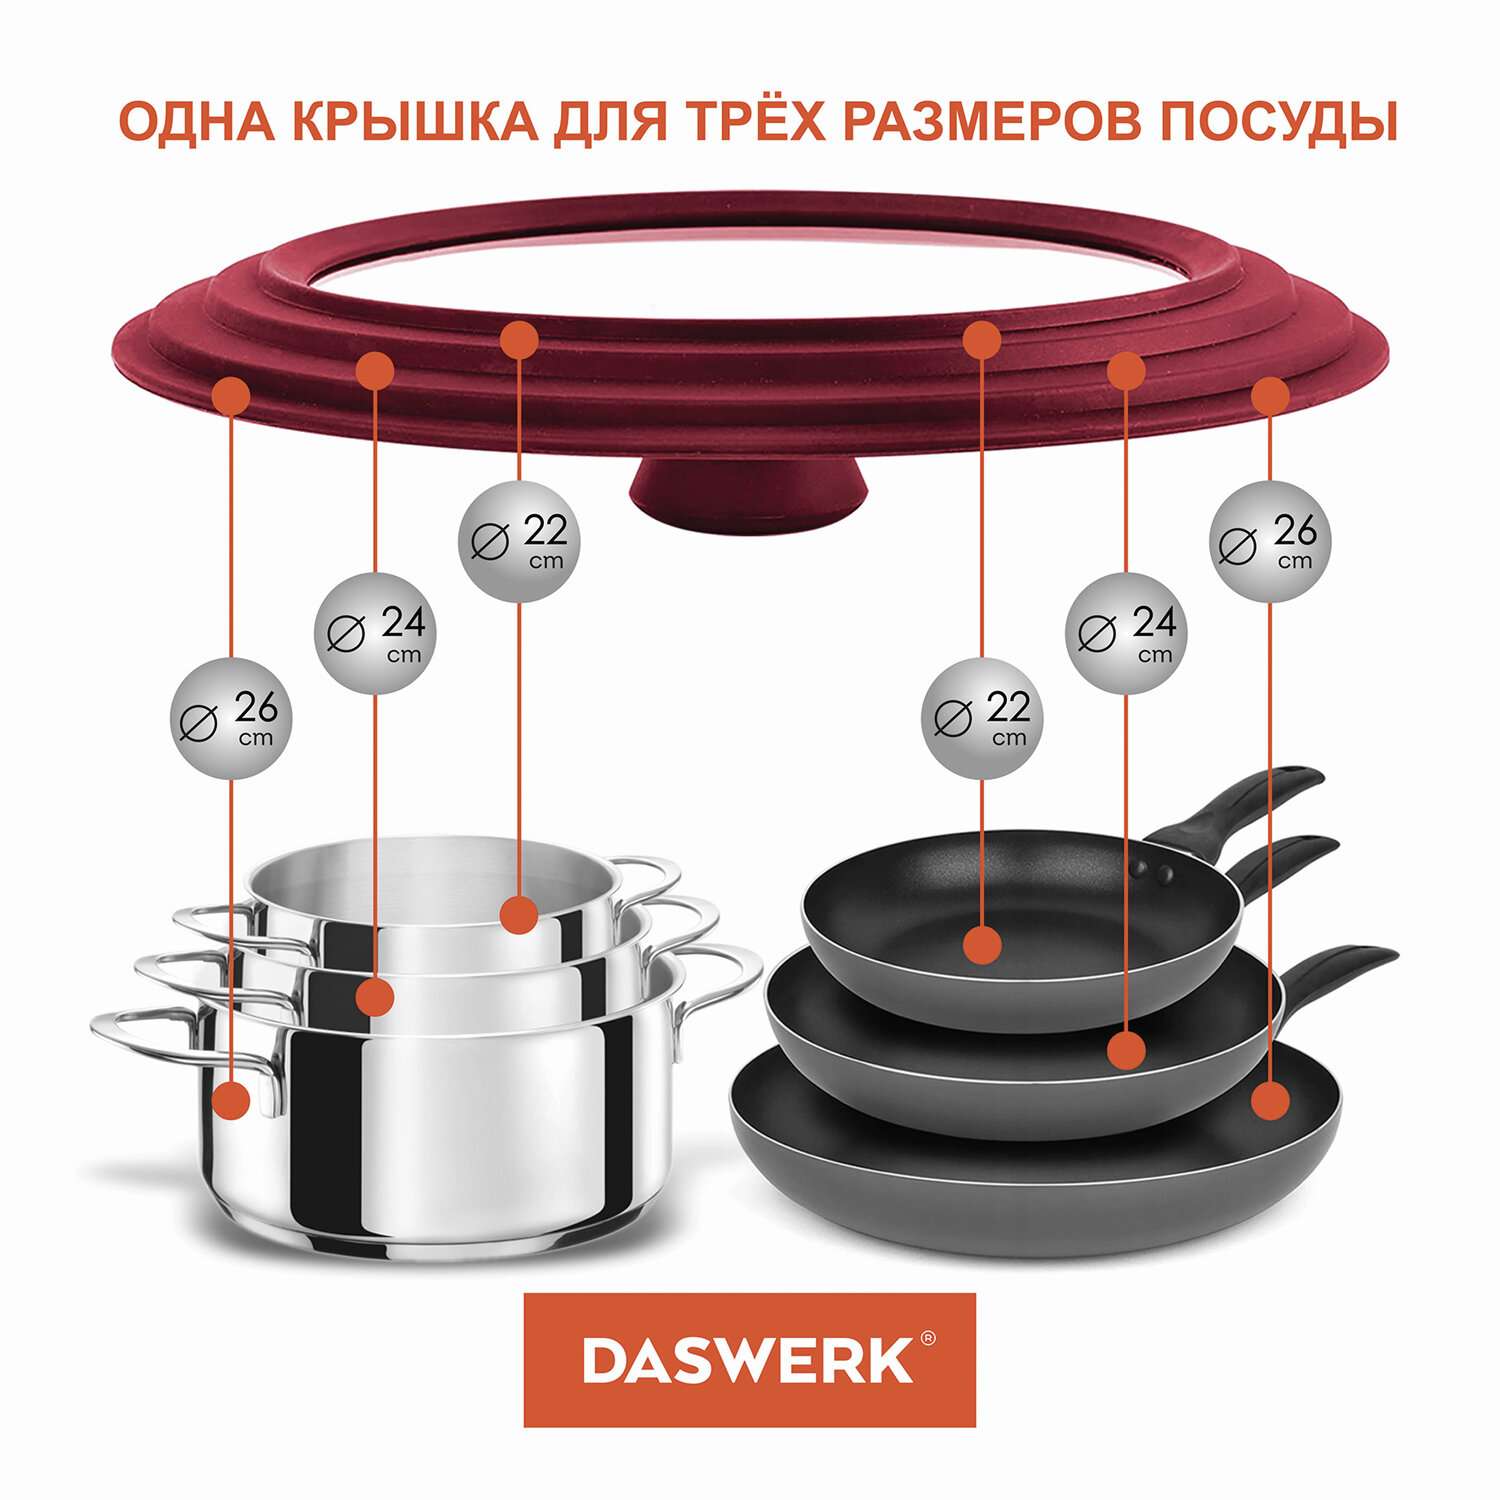 Крышка для сковороды DASWERK кастрюли посуды универсальная 3 размера 22-24-26см - фото 4